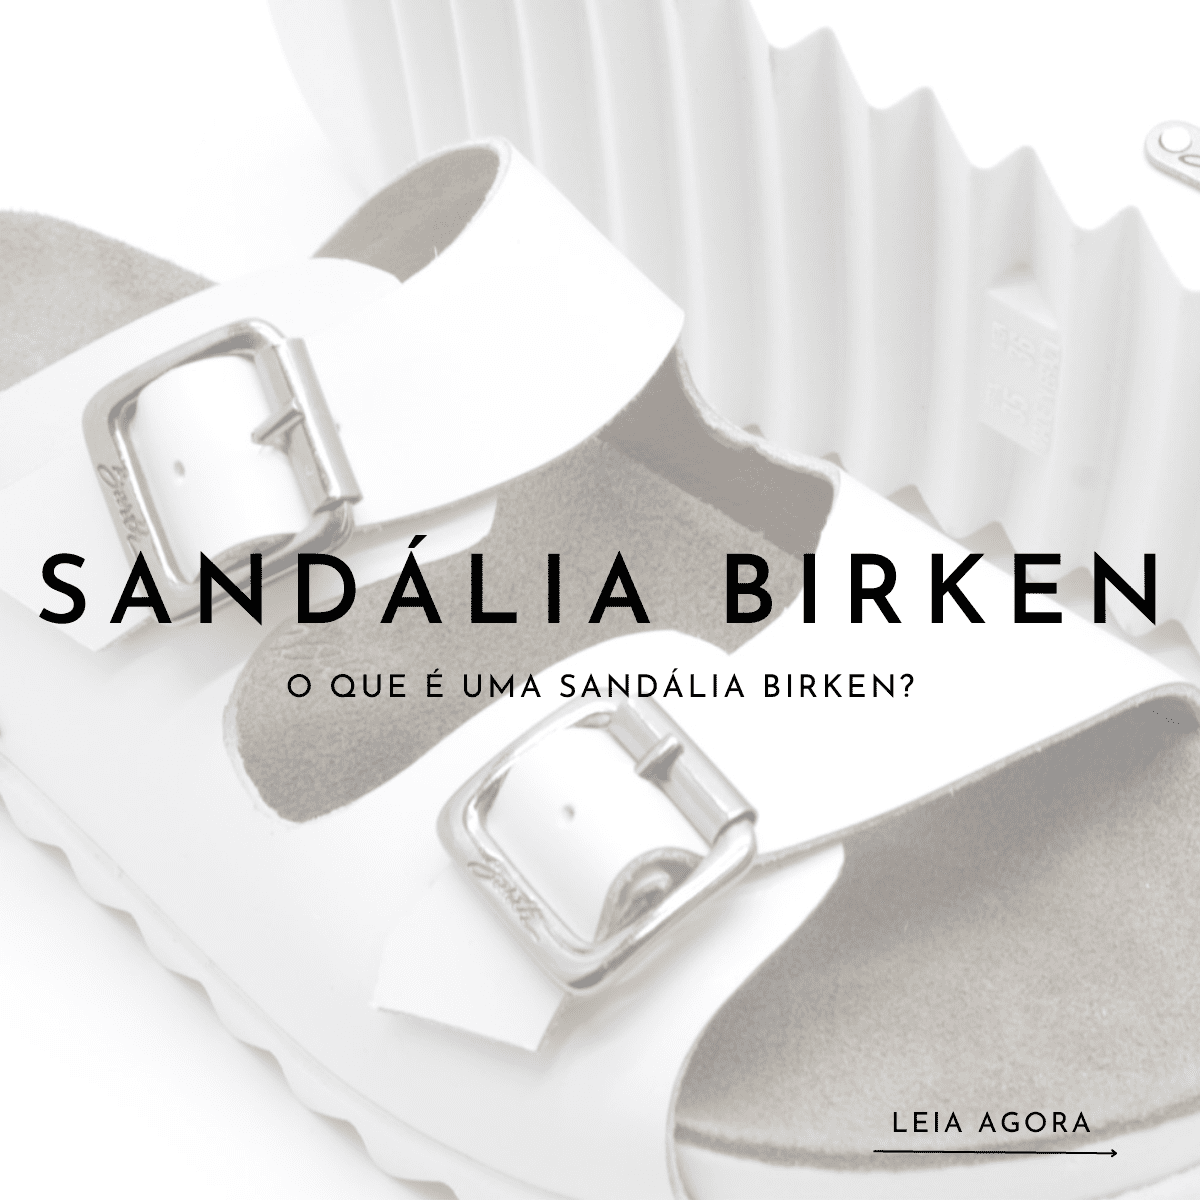 O que é uma sandália birken?